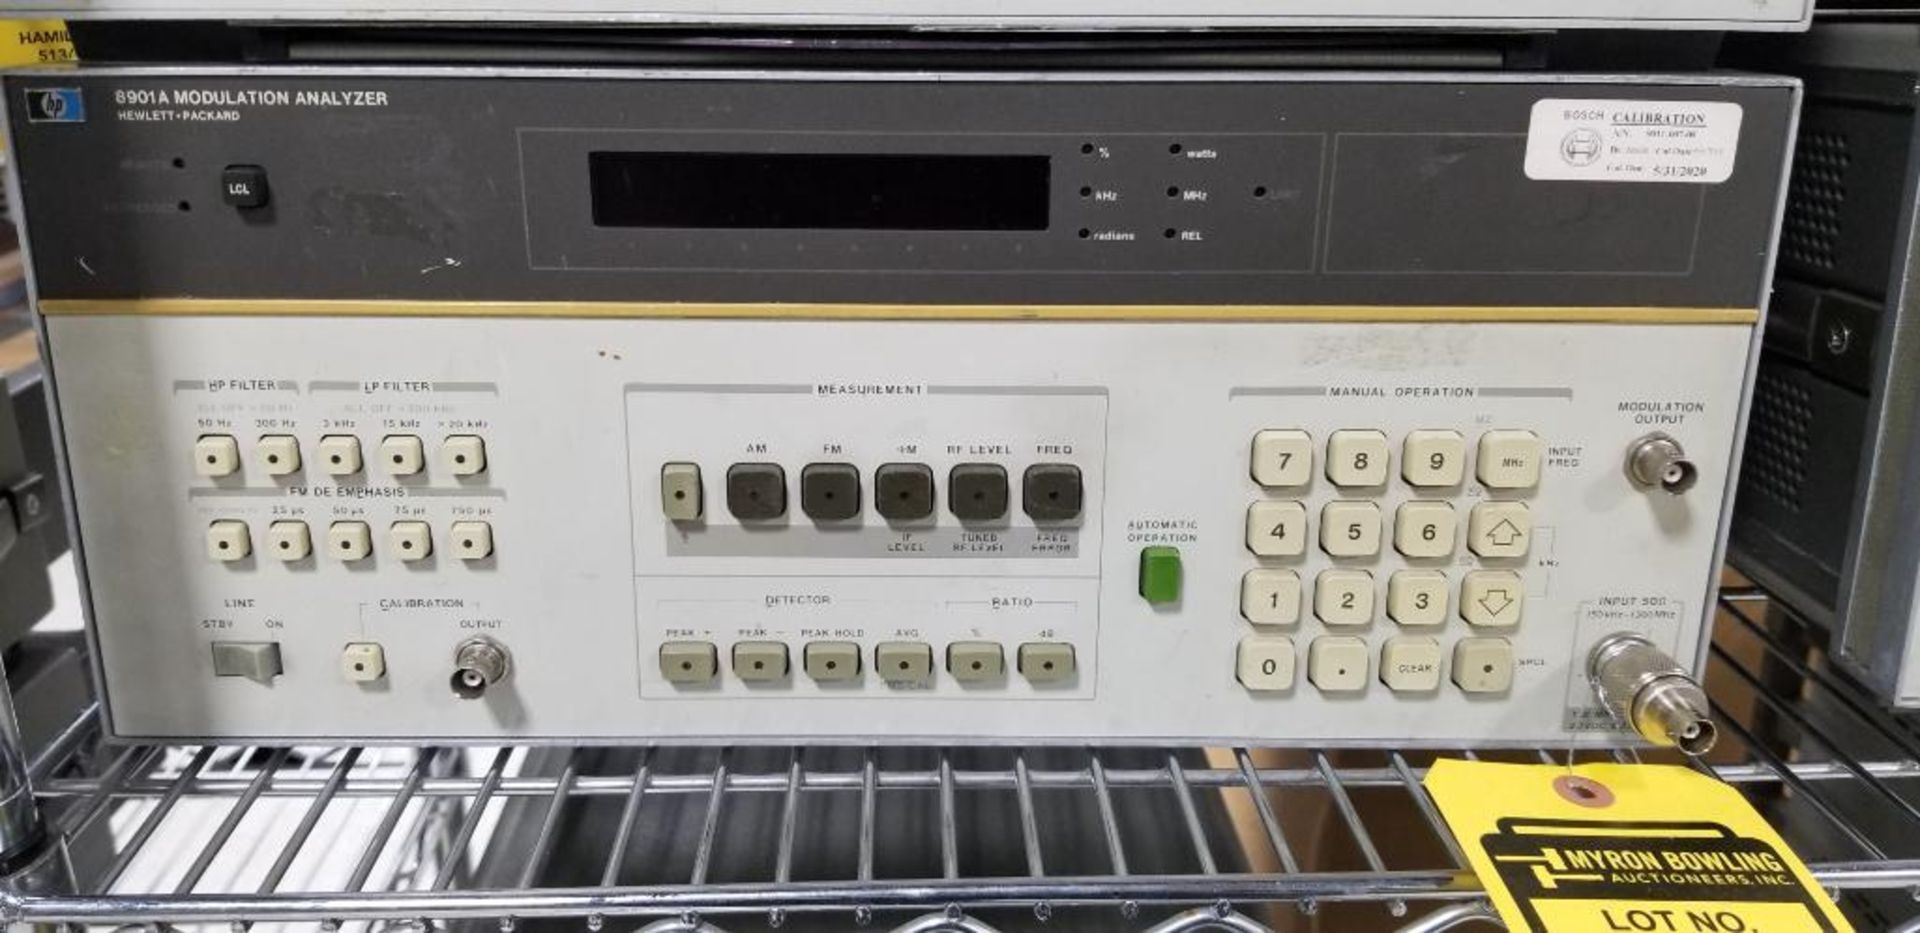 (4x) Hewlett Packard Modulation Analyzers, Model 8901A - Image 5 of 7